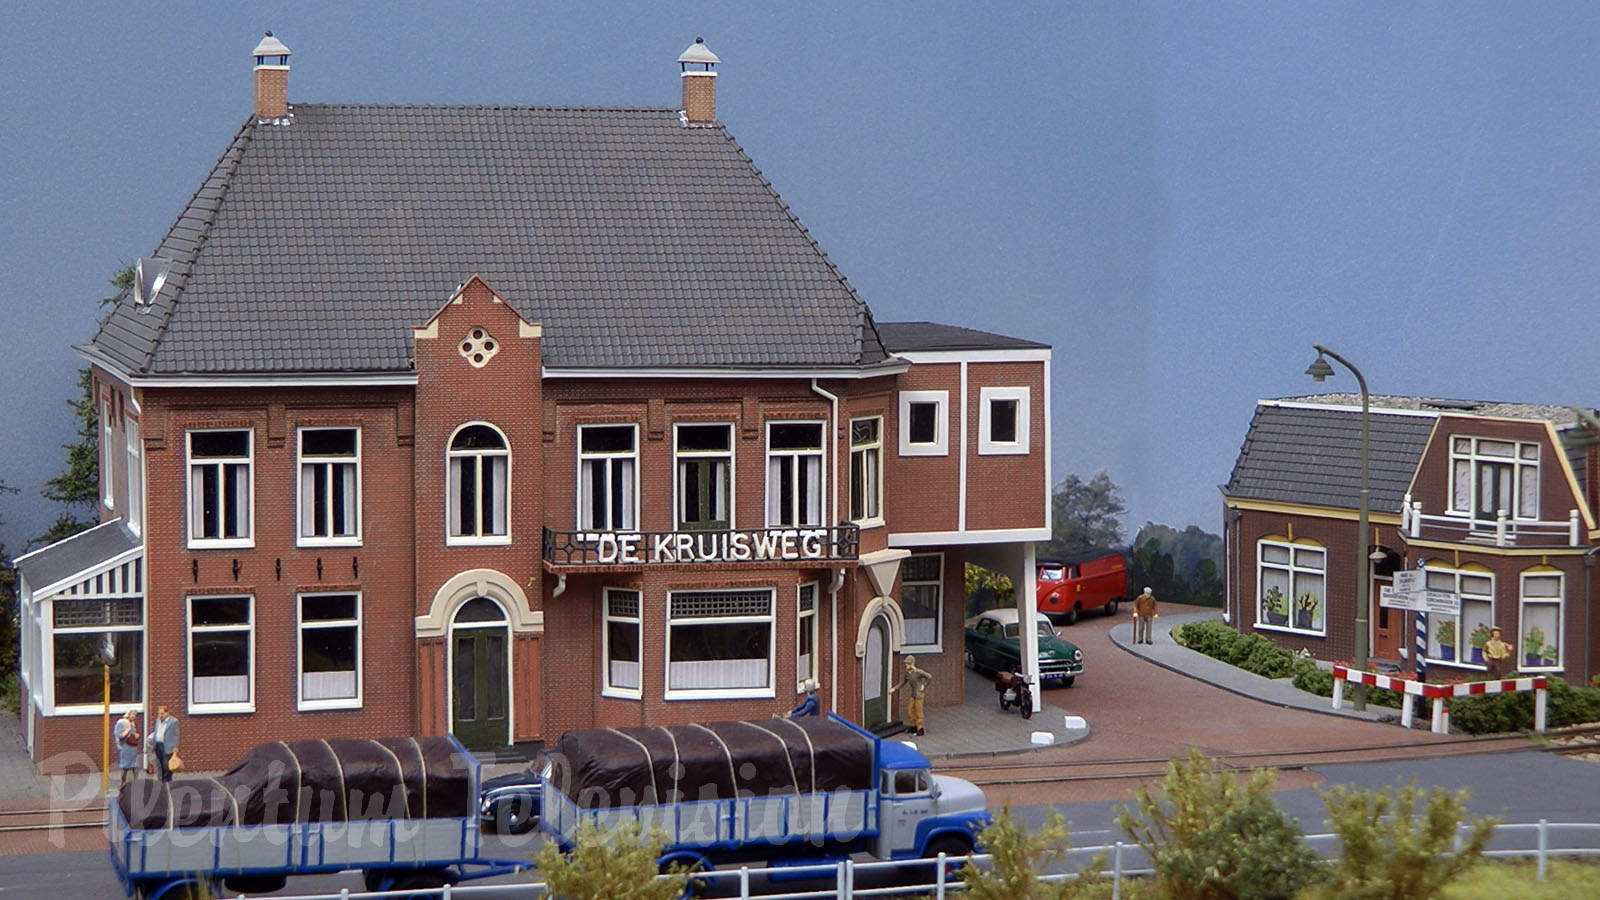 Model railway of the Drachten-Groningen tramway - The Philipslijn model railroad by Fokko Feenstra